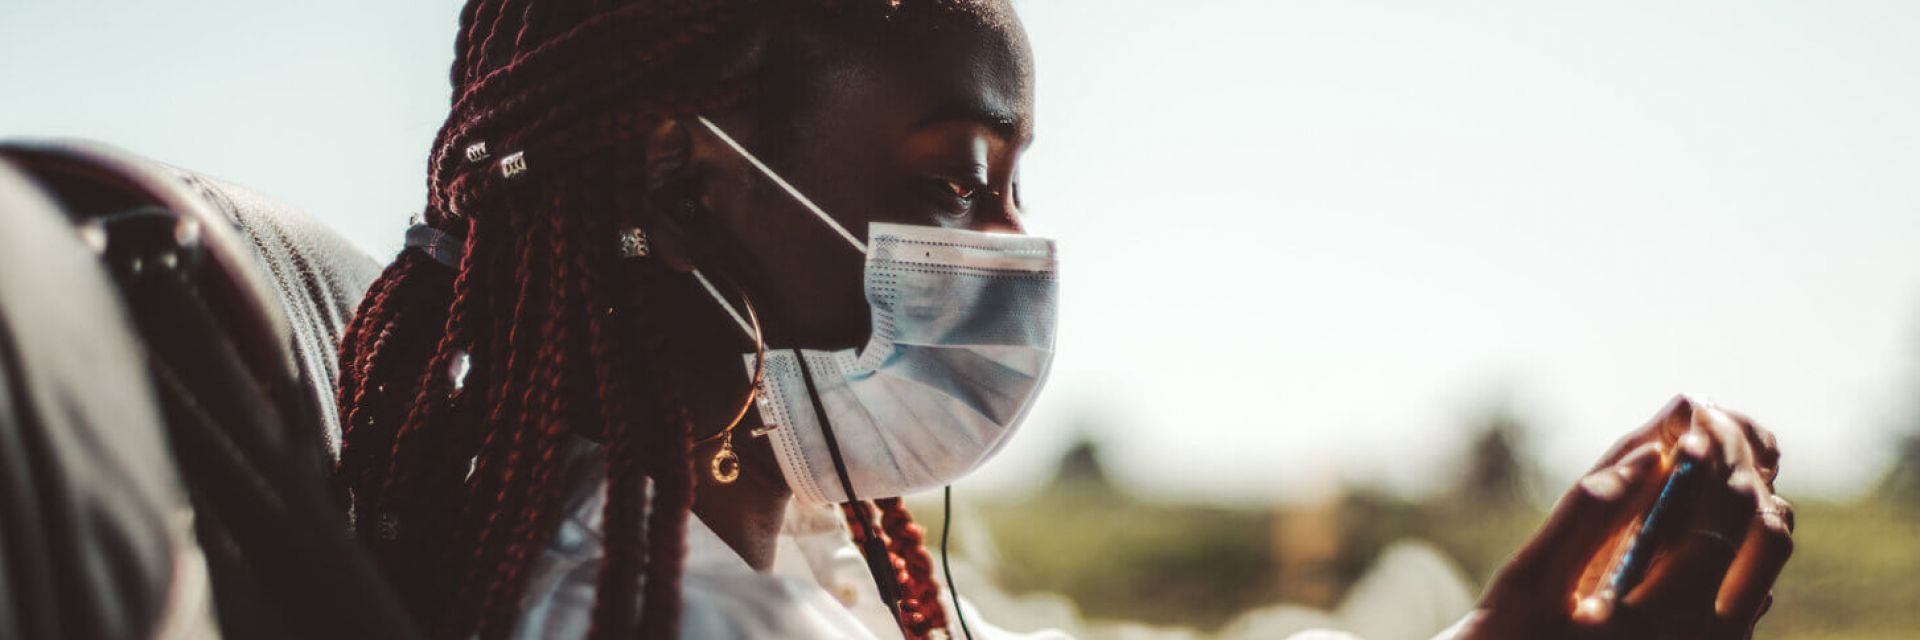 Viajar de ônibus na pandemia: dicas e cuidados para se proteger